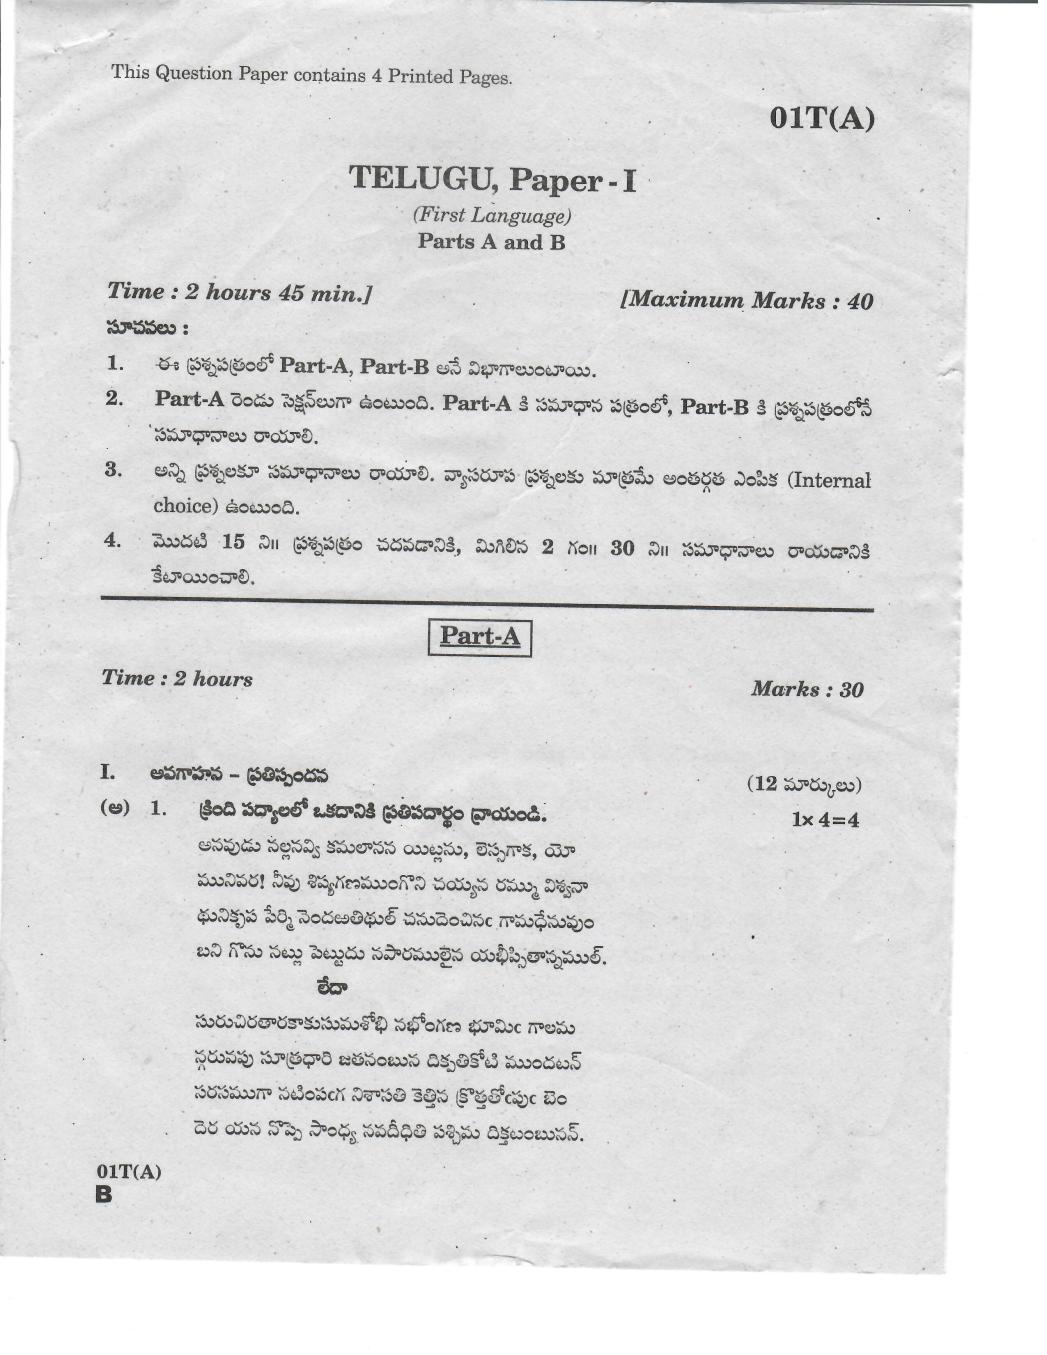 10th class essay 1 telugu paper